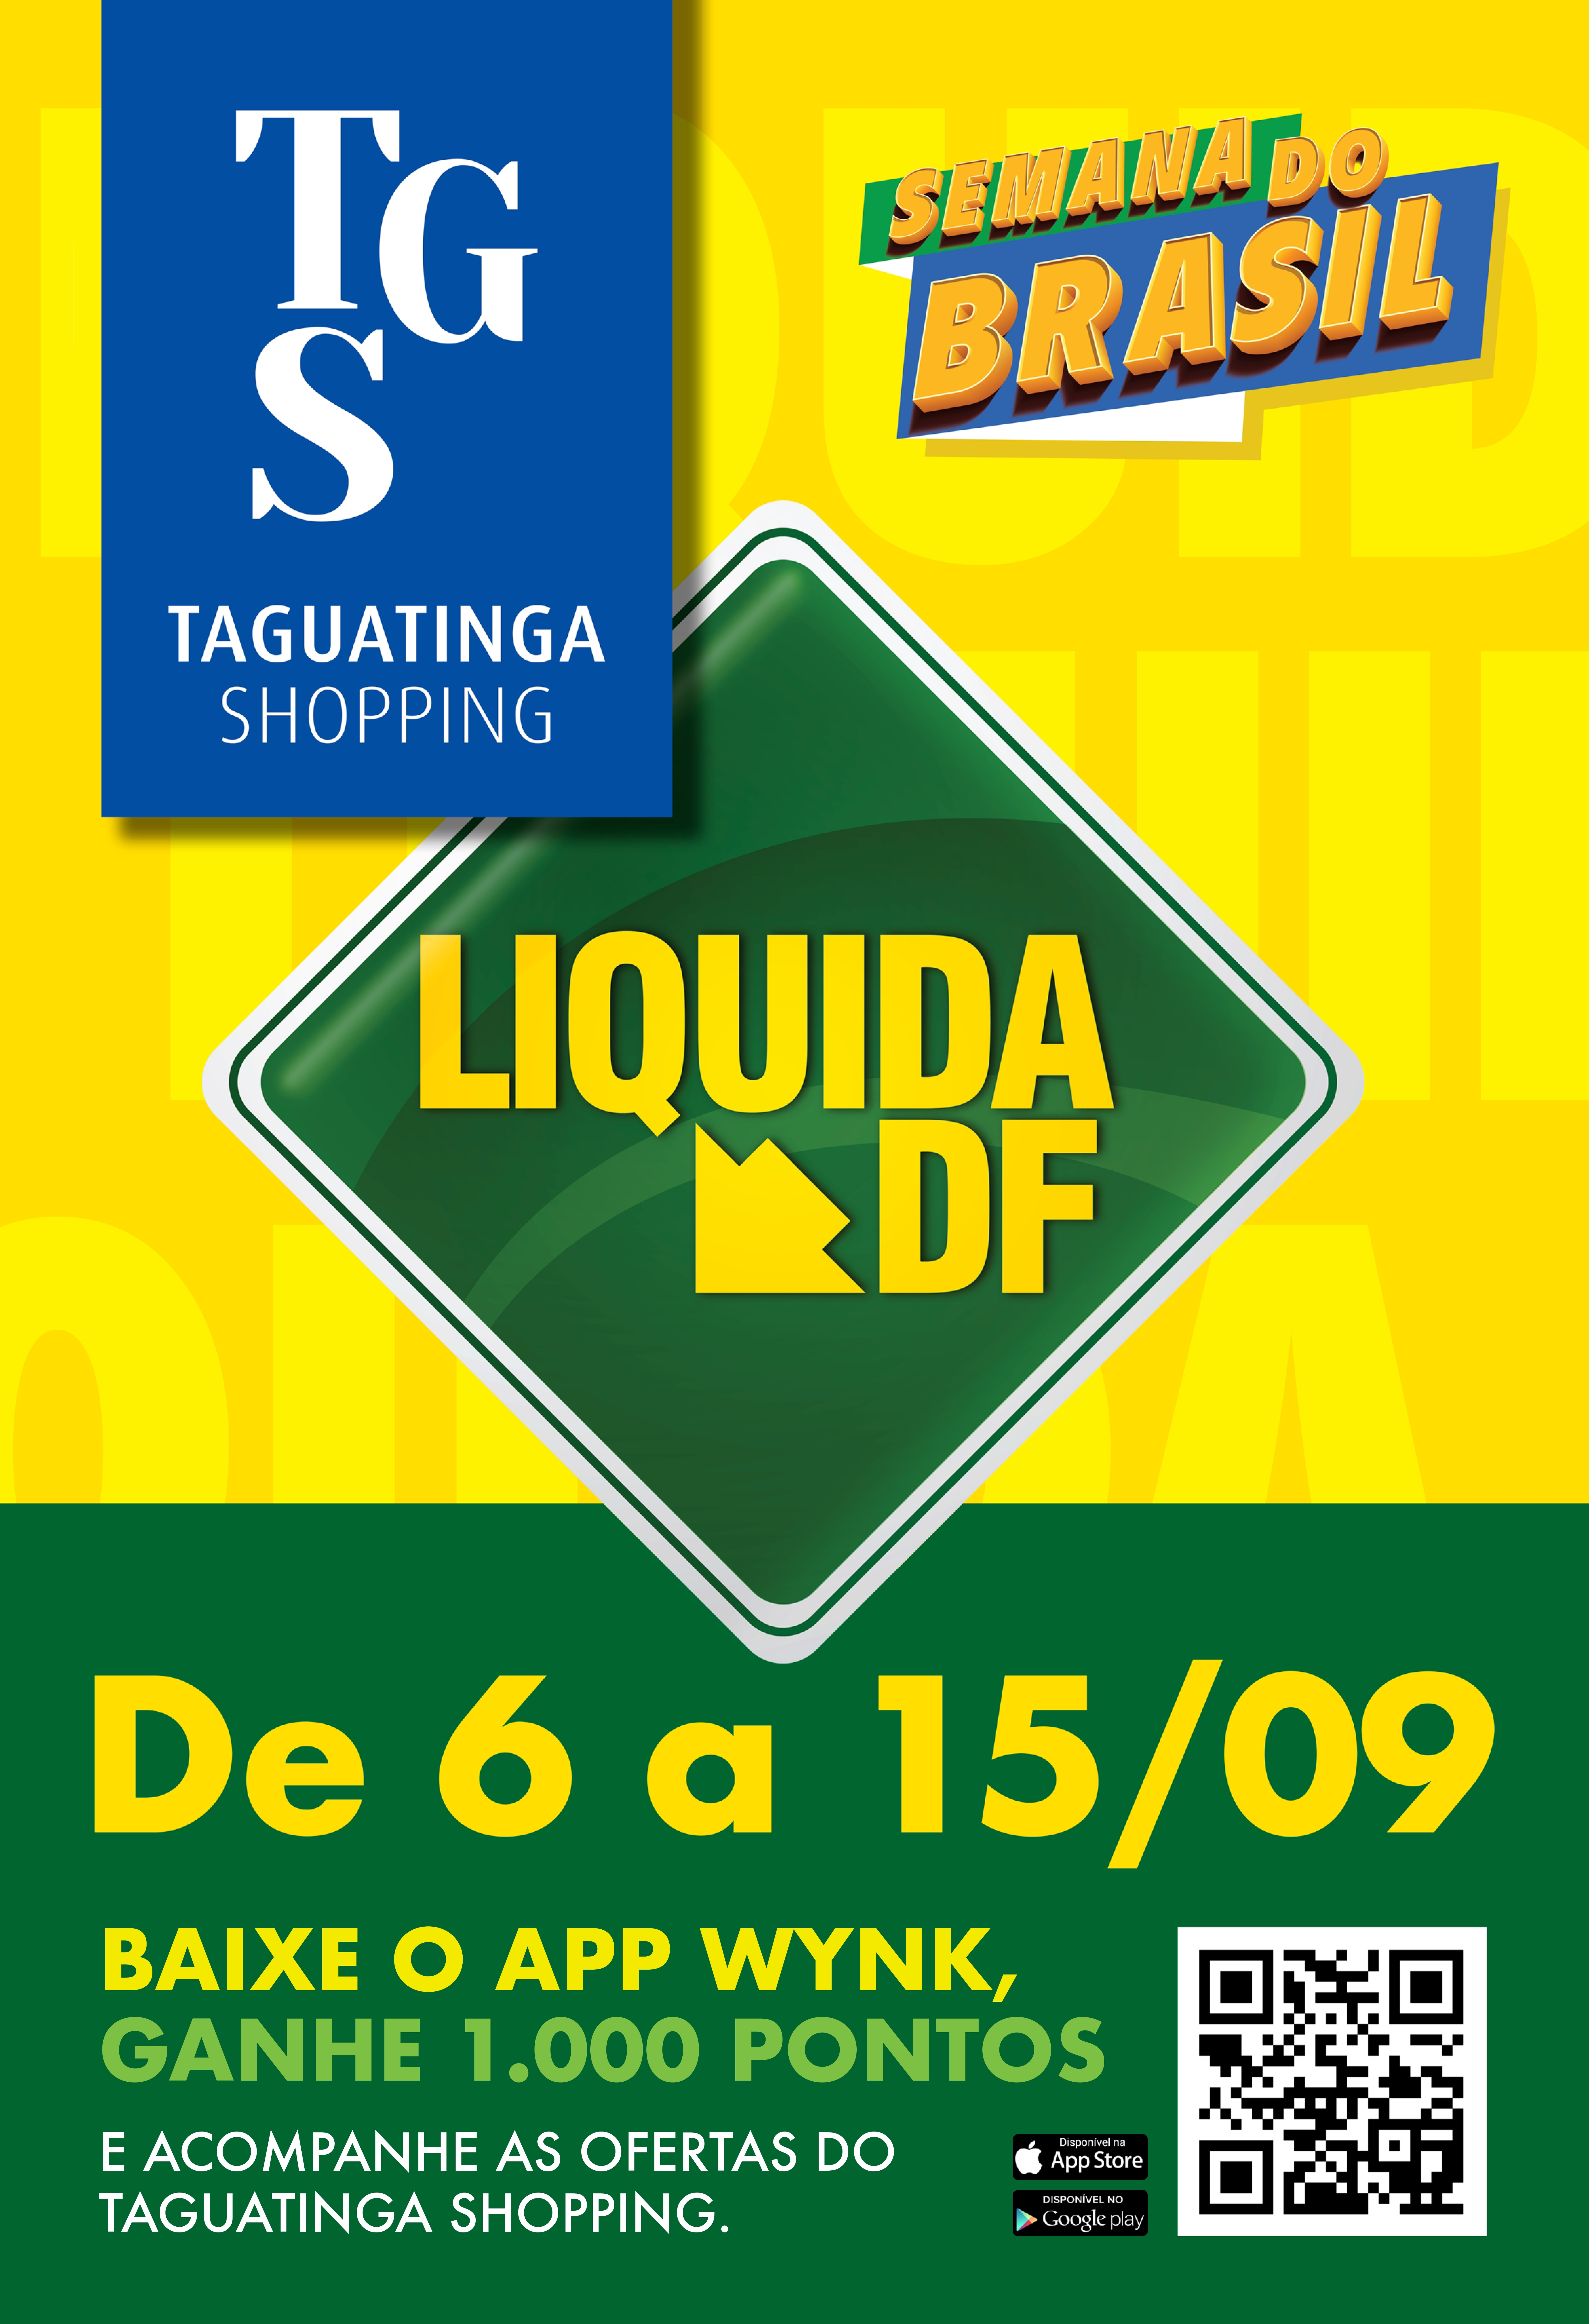 Na Semana do Brasil, Liquida DF agita Taguatinga Shopping com descontos especiais